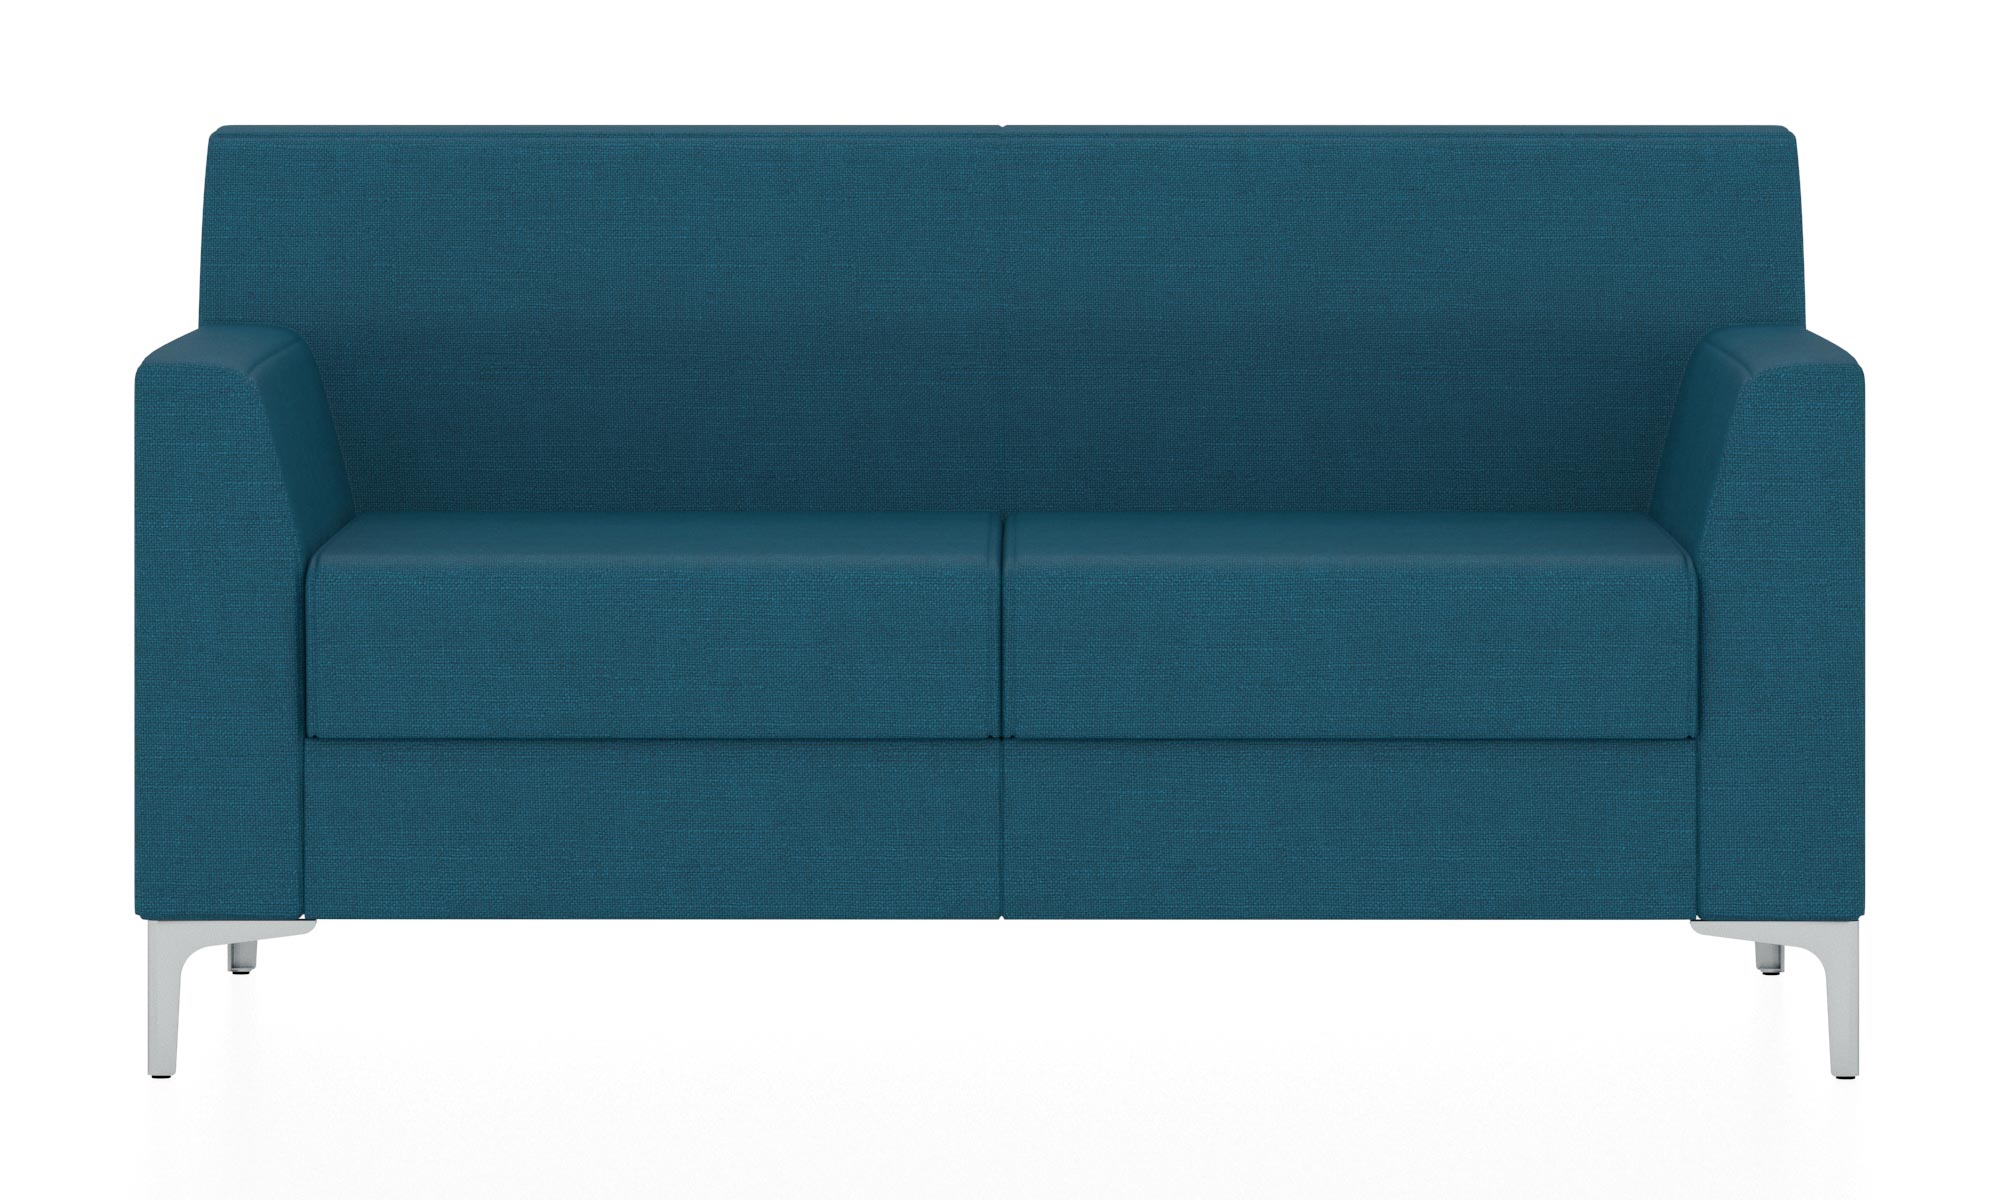 Классический двухместный диван. Обивка из ткани синего цвета (Twist 12)